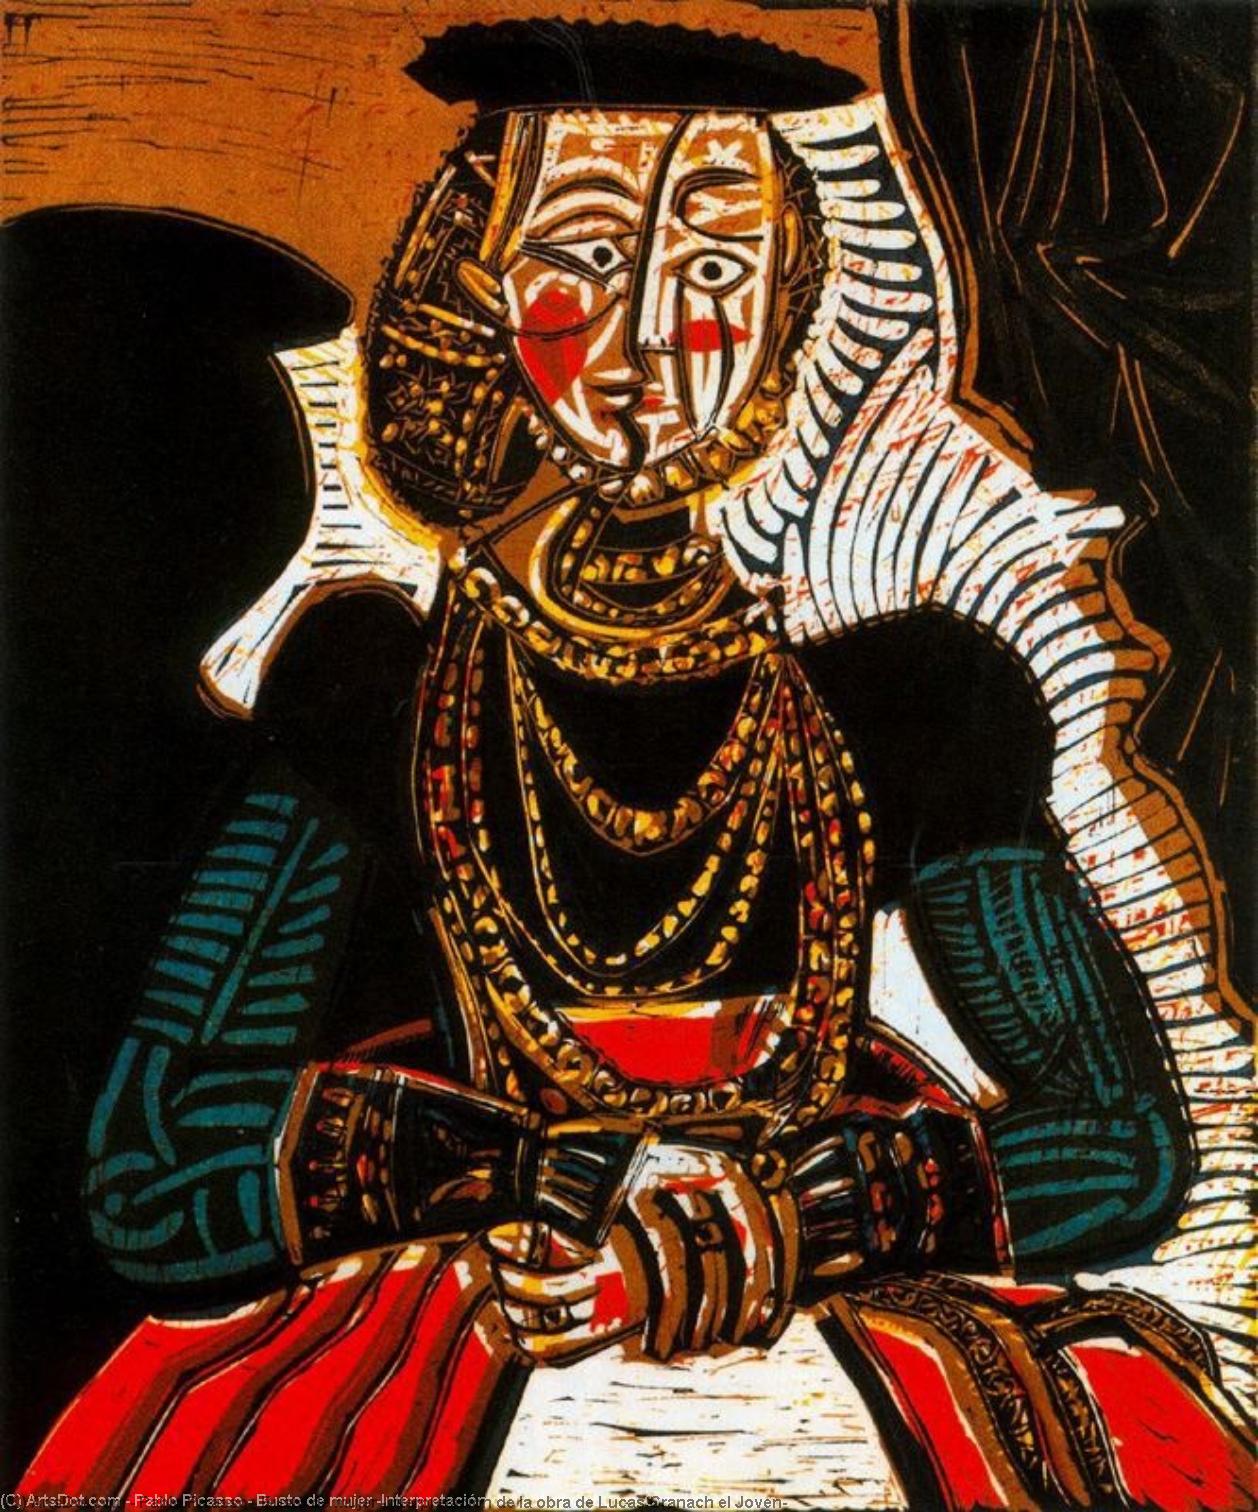 WikiOO.org - Encyclopedia of Fine Arts - Malba, Artwork Pablo Picasso - Busto de mujer (Interpretación de la obra de Lucas Cranach el Joven)